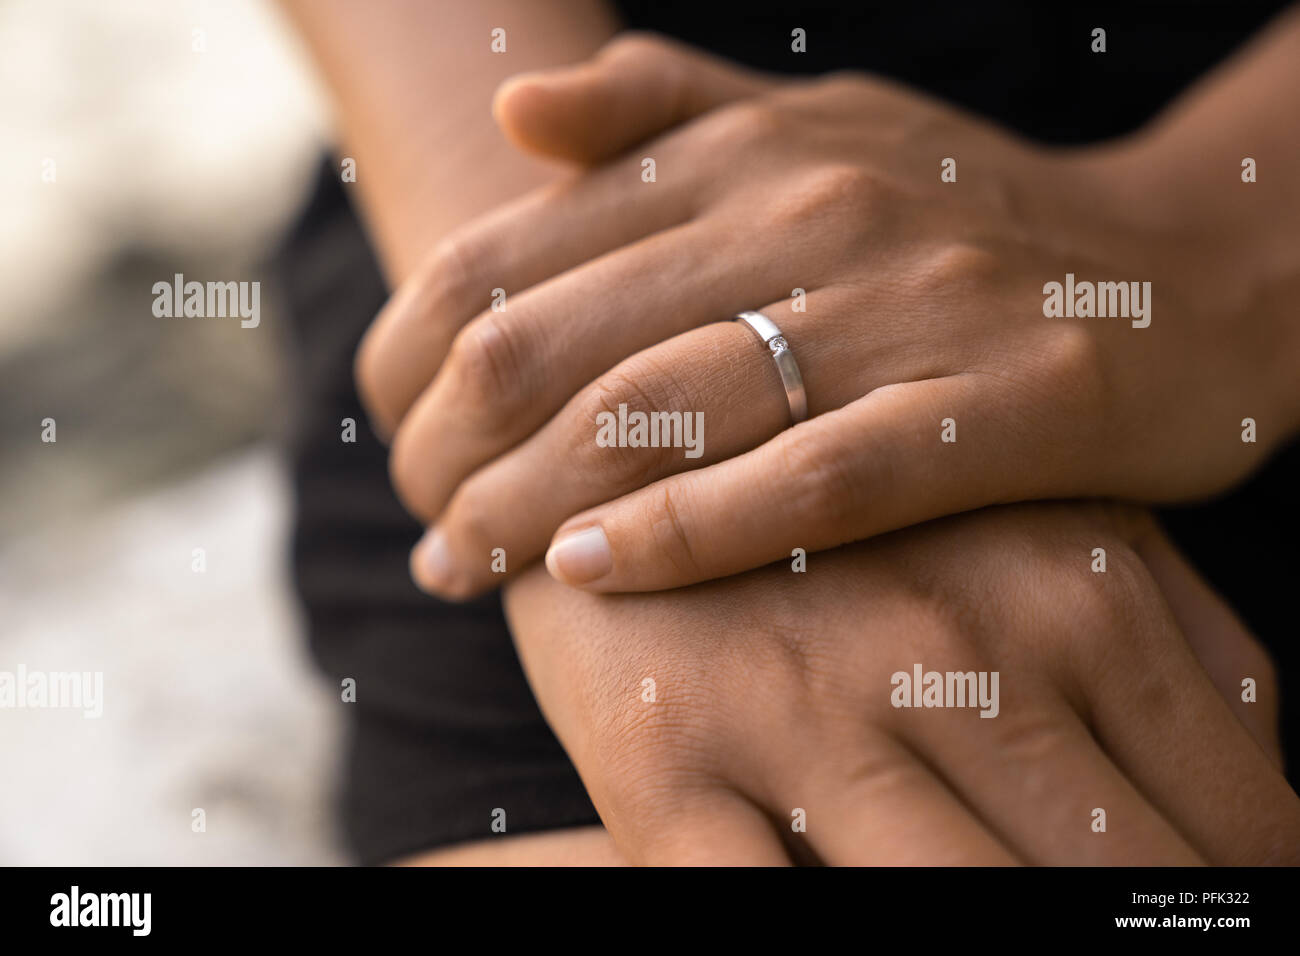 Anello di fidanzamento sulla mano le femmine dopo la proposta di matrimonio Foto Stock